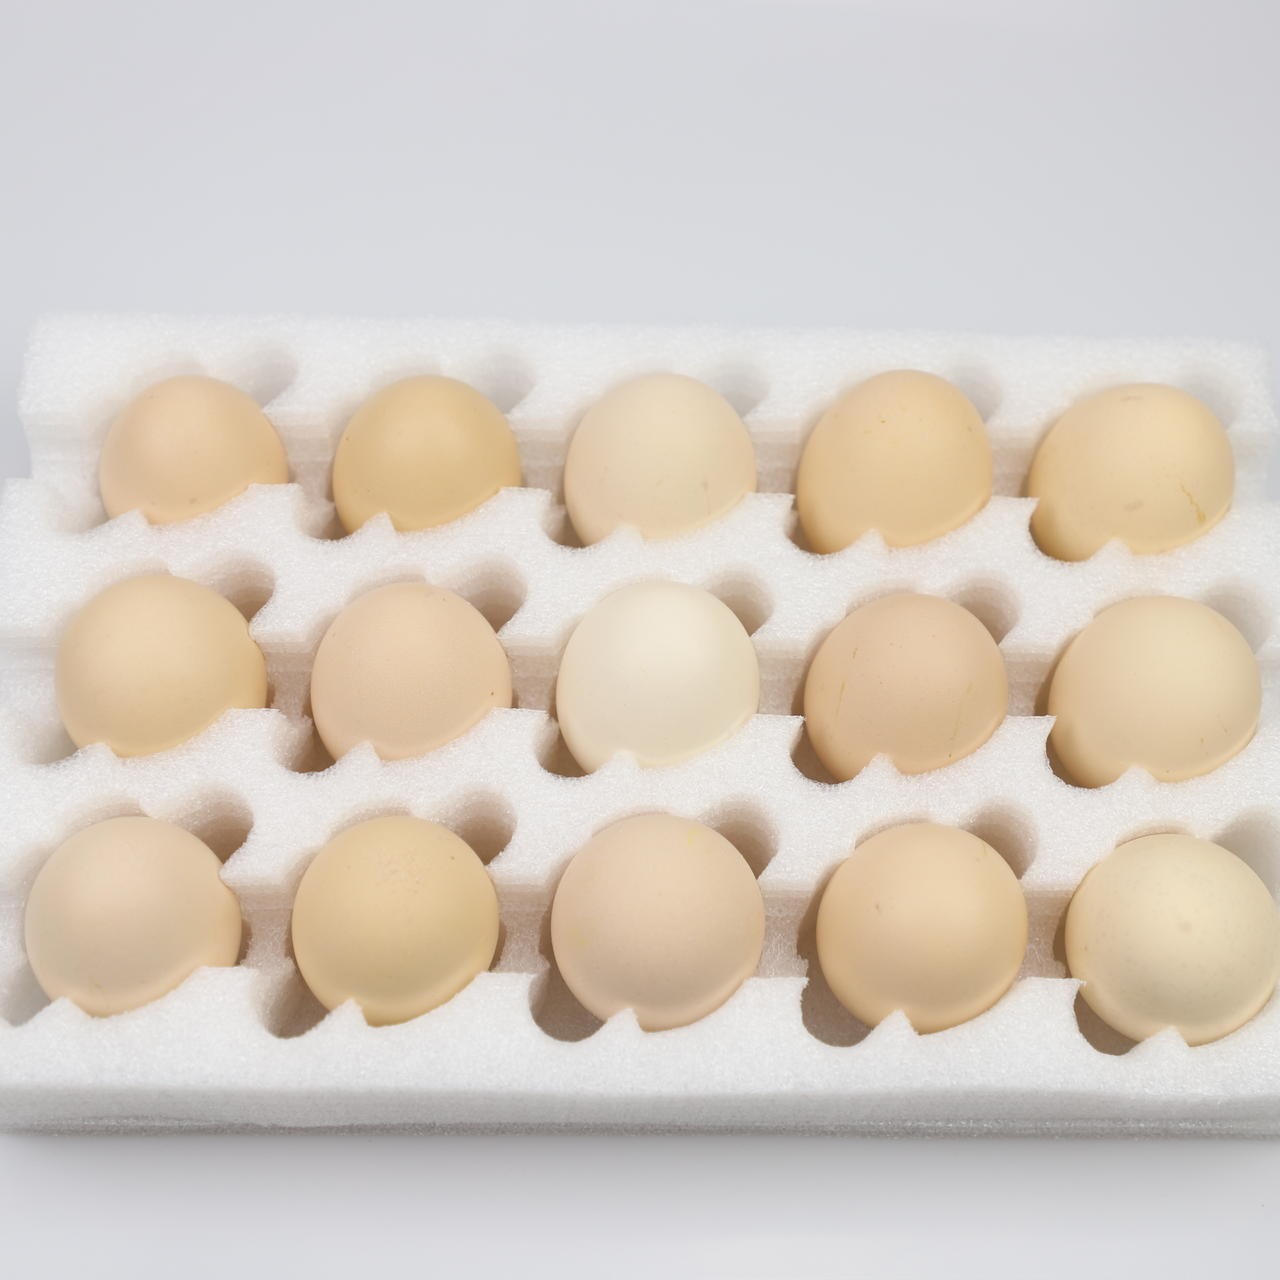 epe珍珠棉鸡蛋托 鸡蛋托生产厂家 批发供应商 鸡蛋托包装盒 10枚鸡蛋托 防震鸡蛋托批发鸡蛋托 两枚鸡蛋托